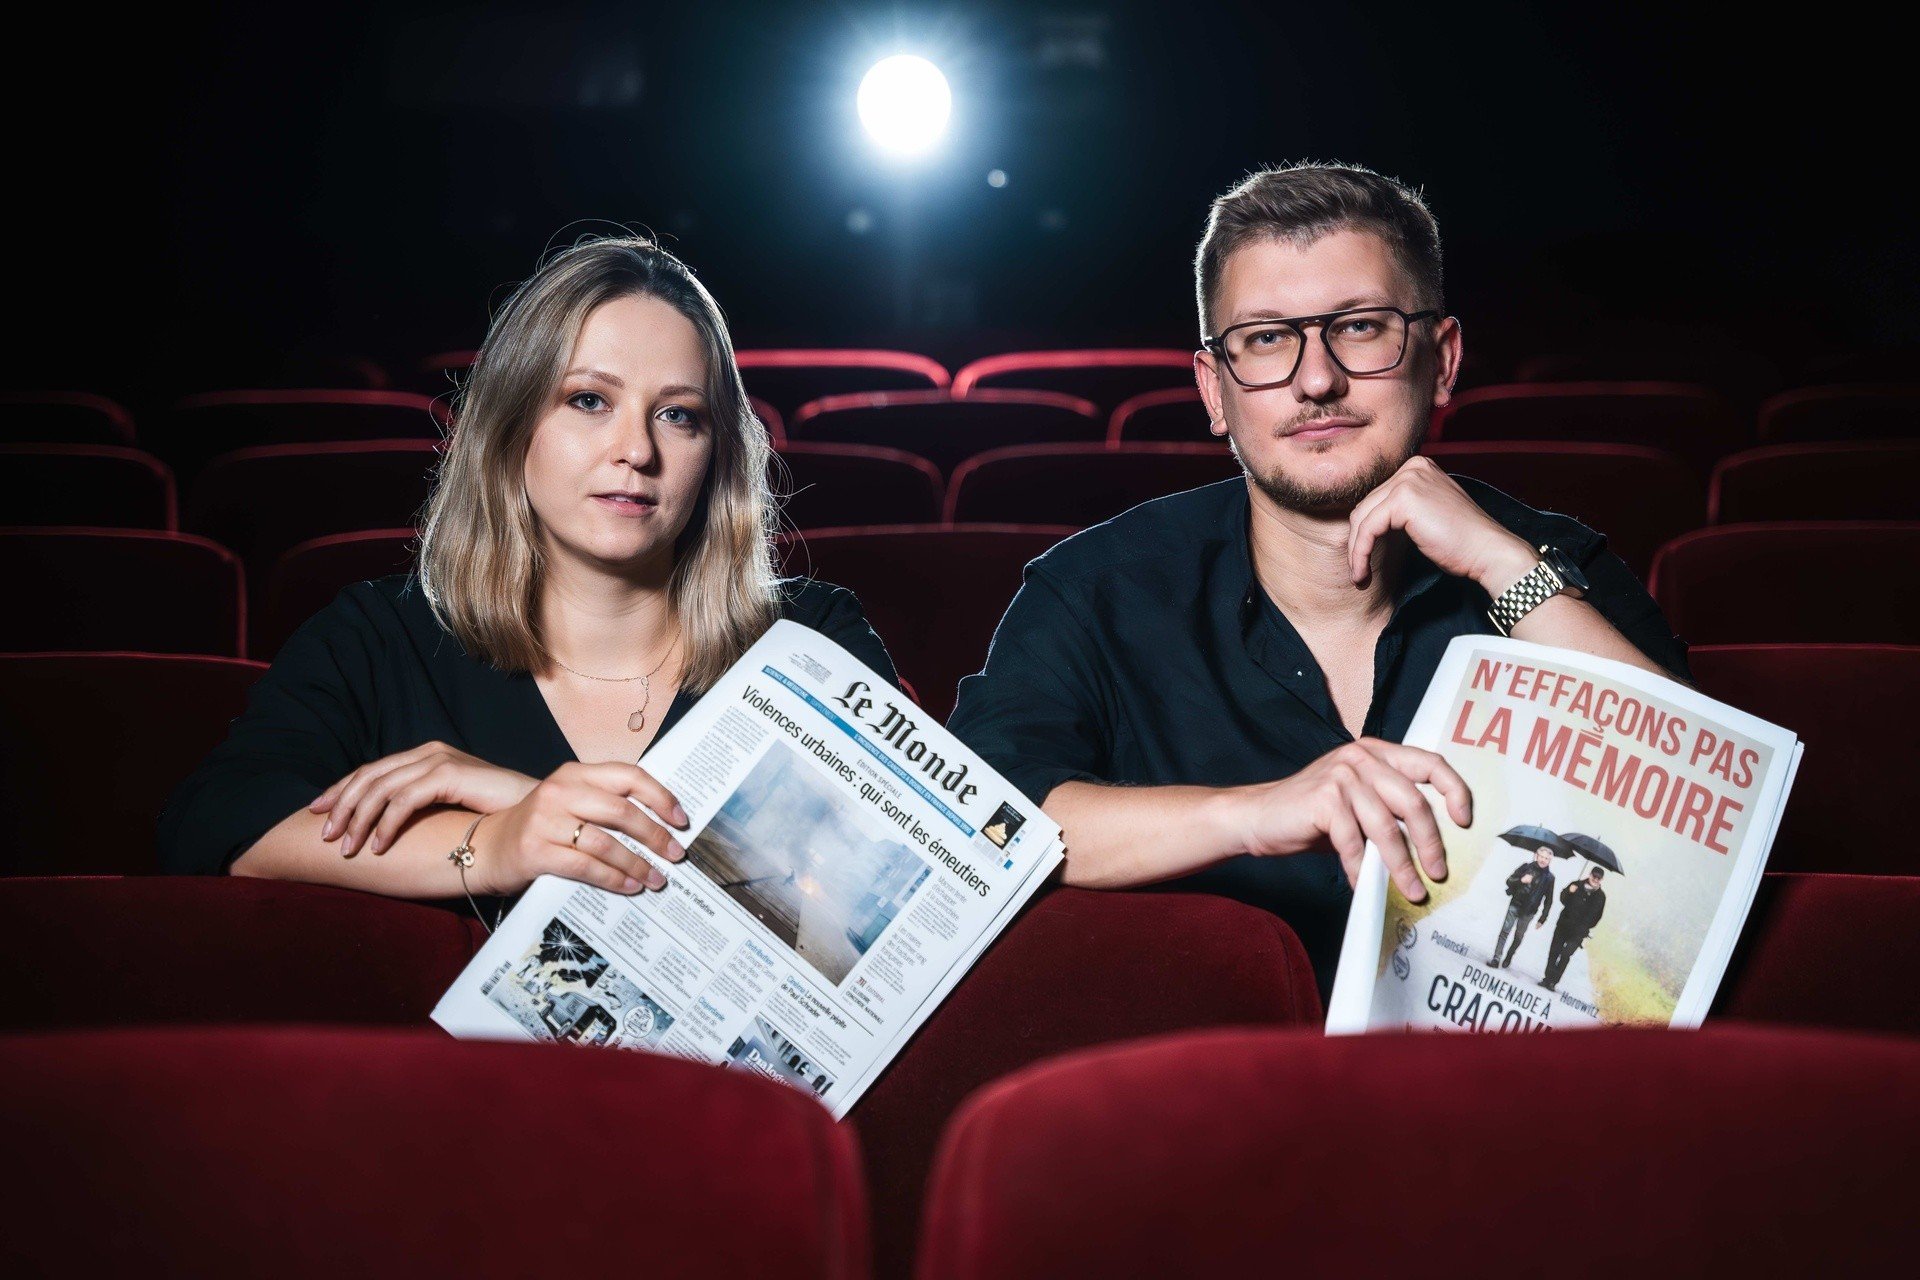 Un documentaire des créateurs de Cracovie sur Roman Polański a divisé la France.  Certains cinémas ne veulent pas le montrer